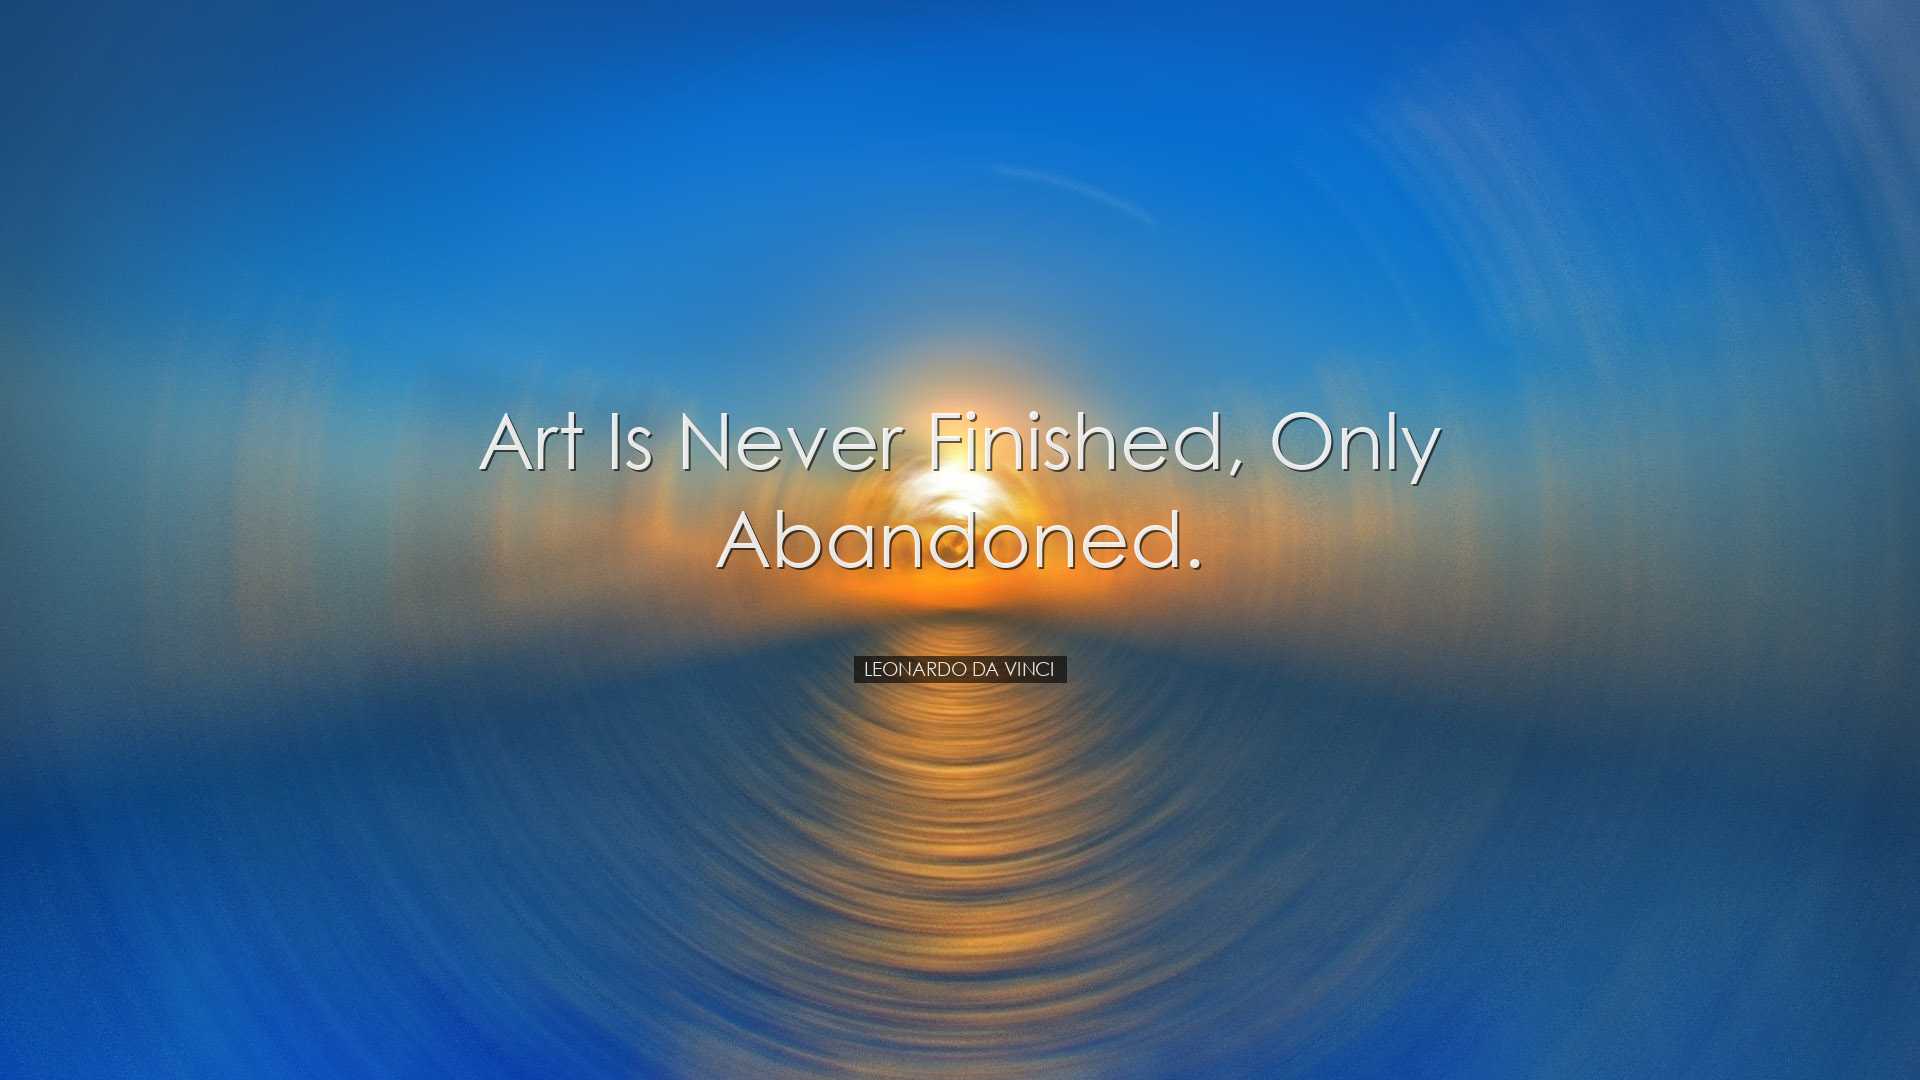 Art is never finished, only abandoned. - Leonardo da Vinci